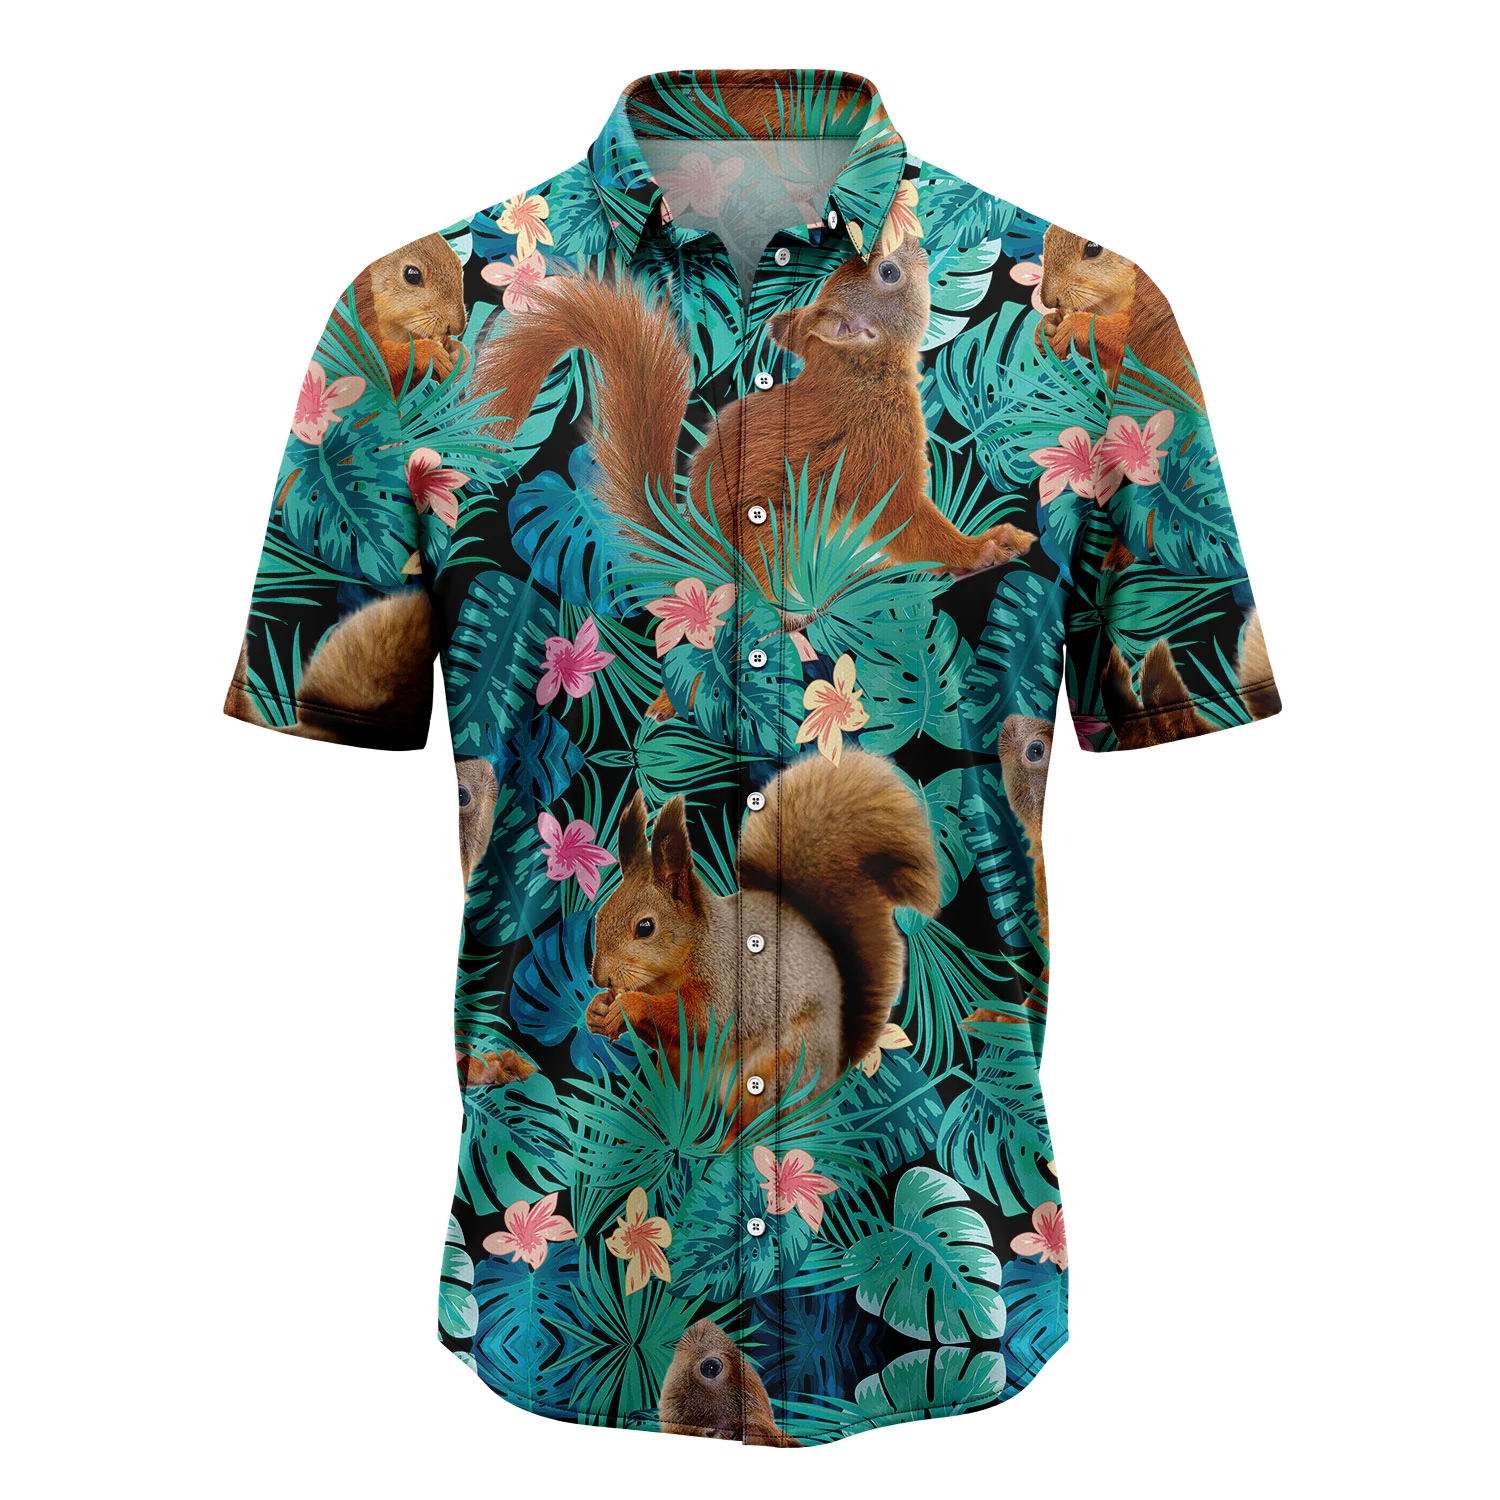 Squirrels Tropical Hawaii Shirt/ Summer Hawaiian Shirts for Men/ women Aloha Beach Shirt